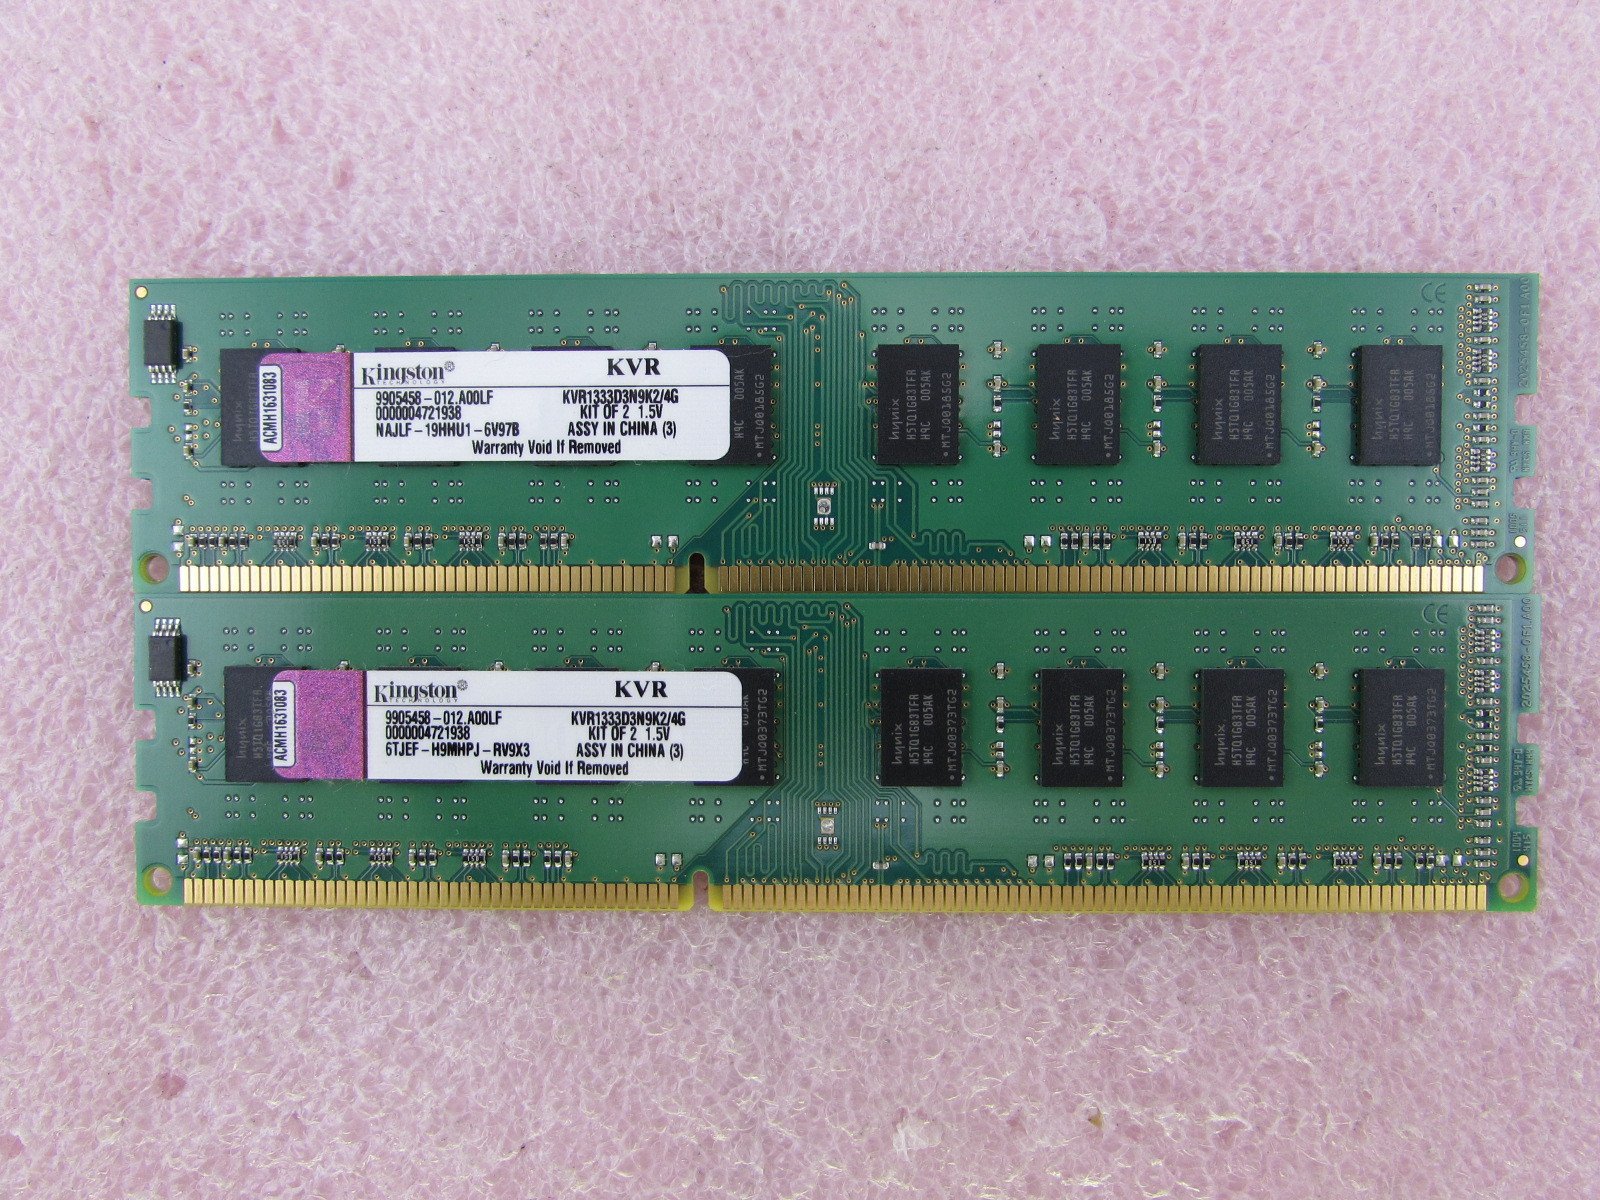 キングストンテクノロジー Kingston 2GB x 2枚組 1333MHz DDR3 Non-ECC CL9 DIMM Kit of 2 KVR1333D3N9K24G